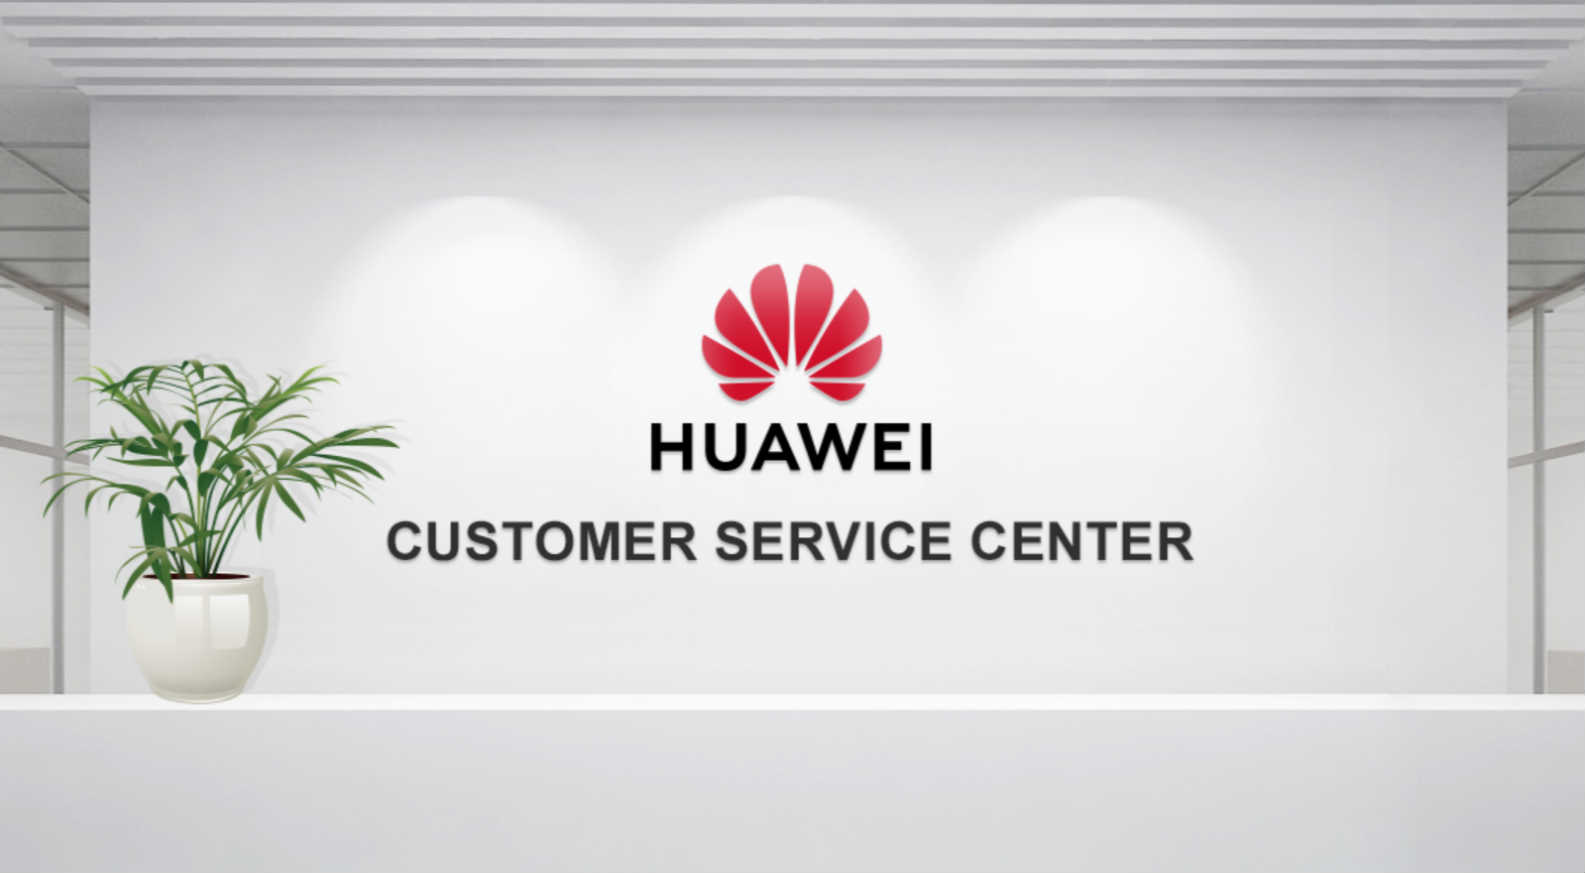 Huawei горячая линия. Сервис Хуавей. Контактный центр Хуавей. Huawei Новосибирск исследовательский центр. Huawei CRM.